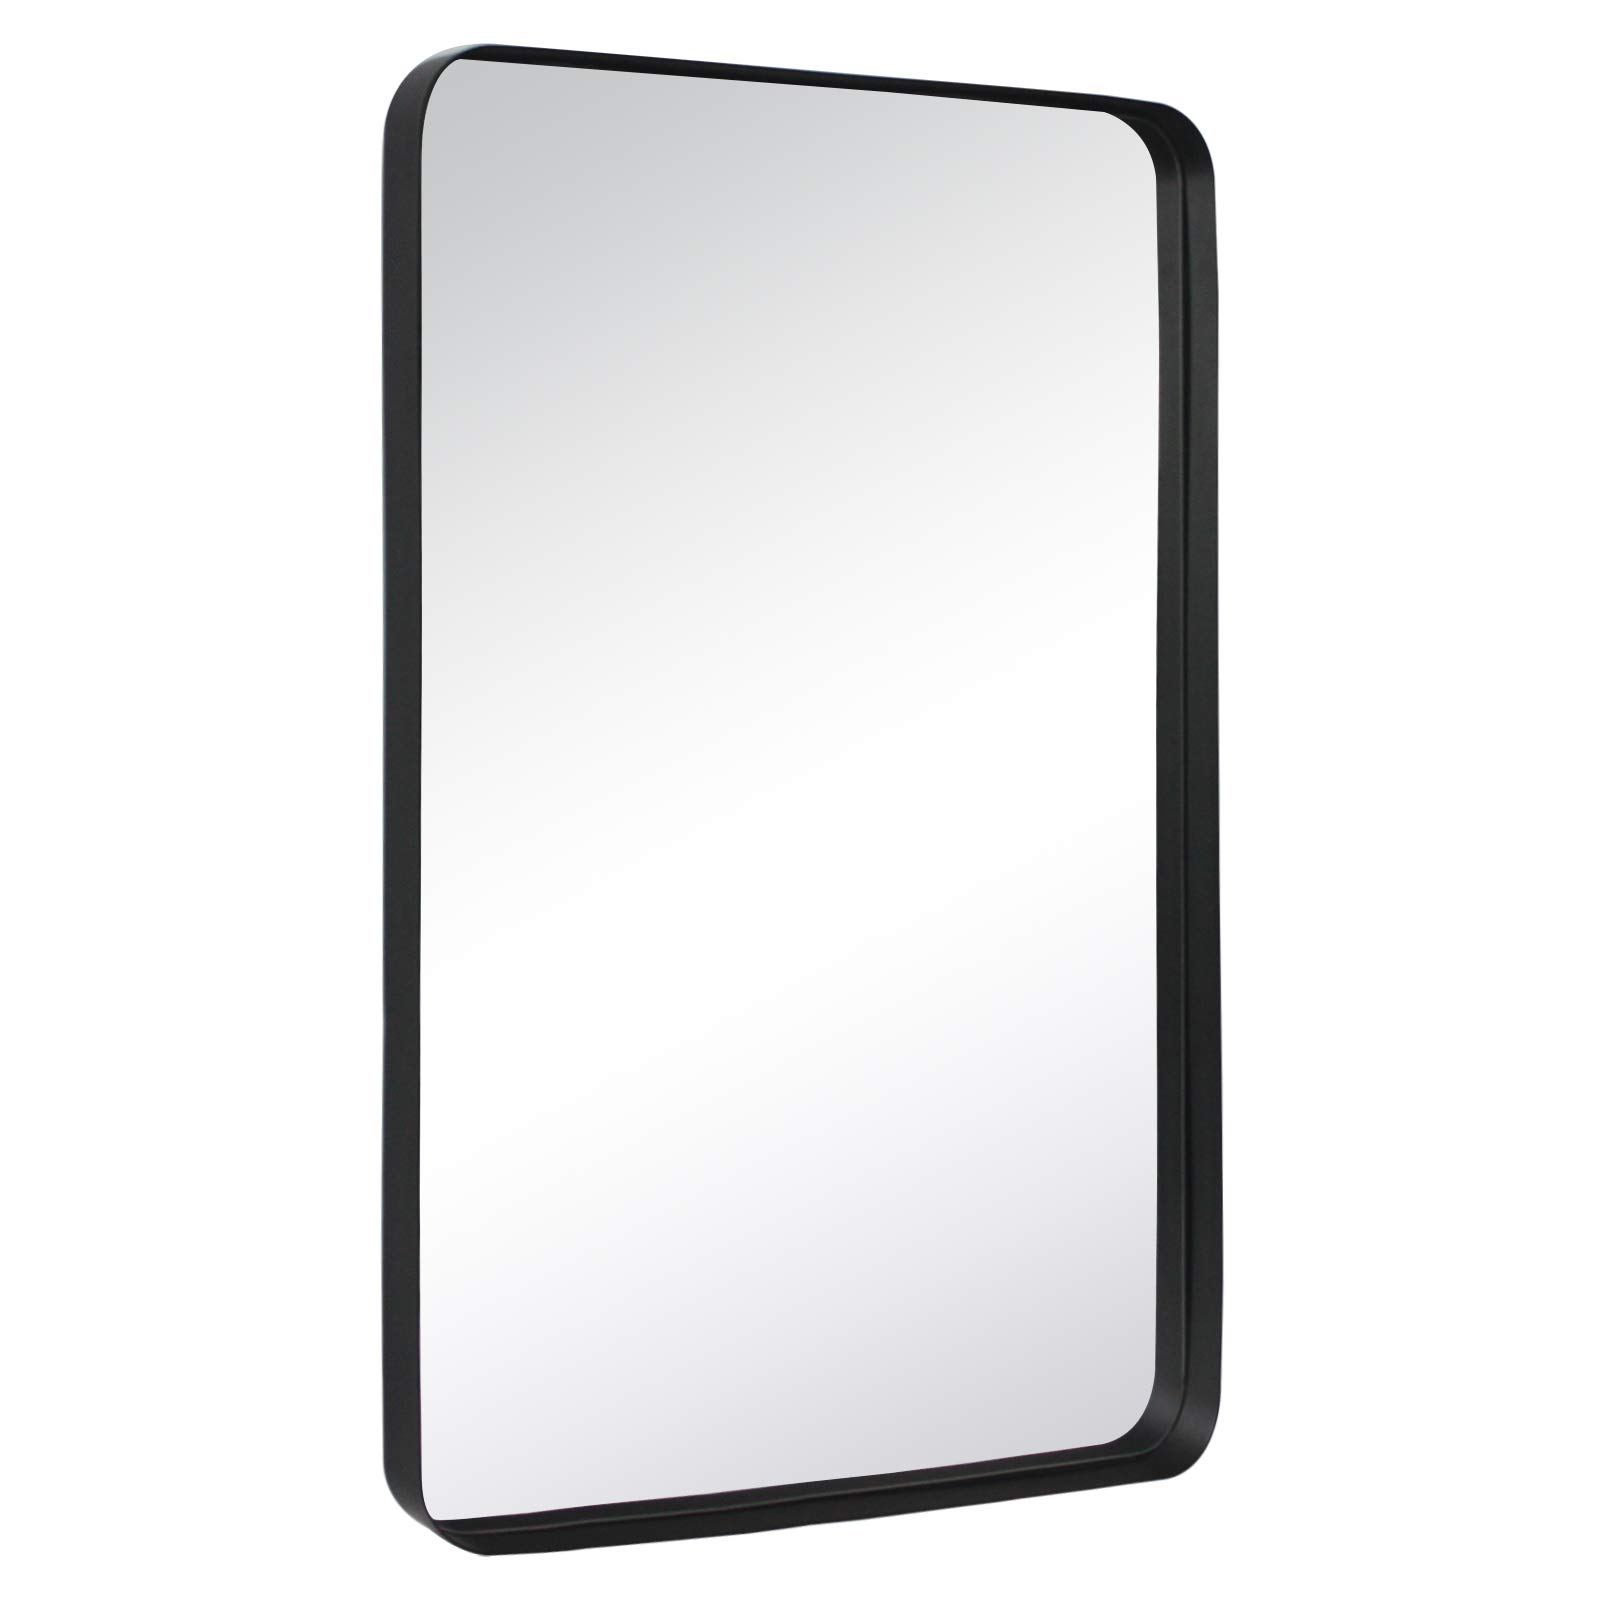 Arthers Stainless Steel Metal Bathroom Vanity Wall Mirror -24x36-Black